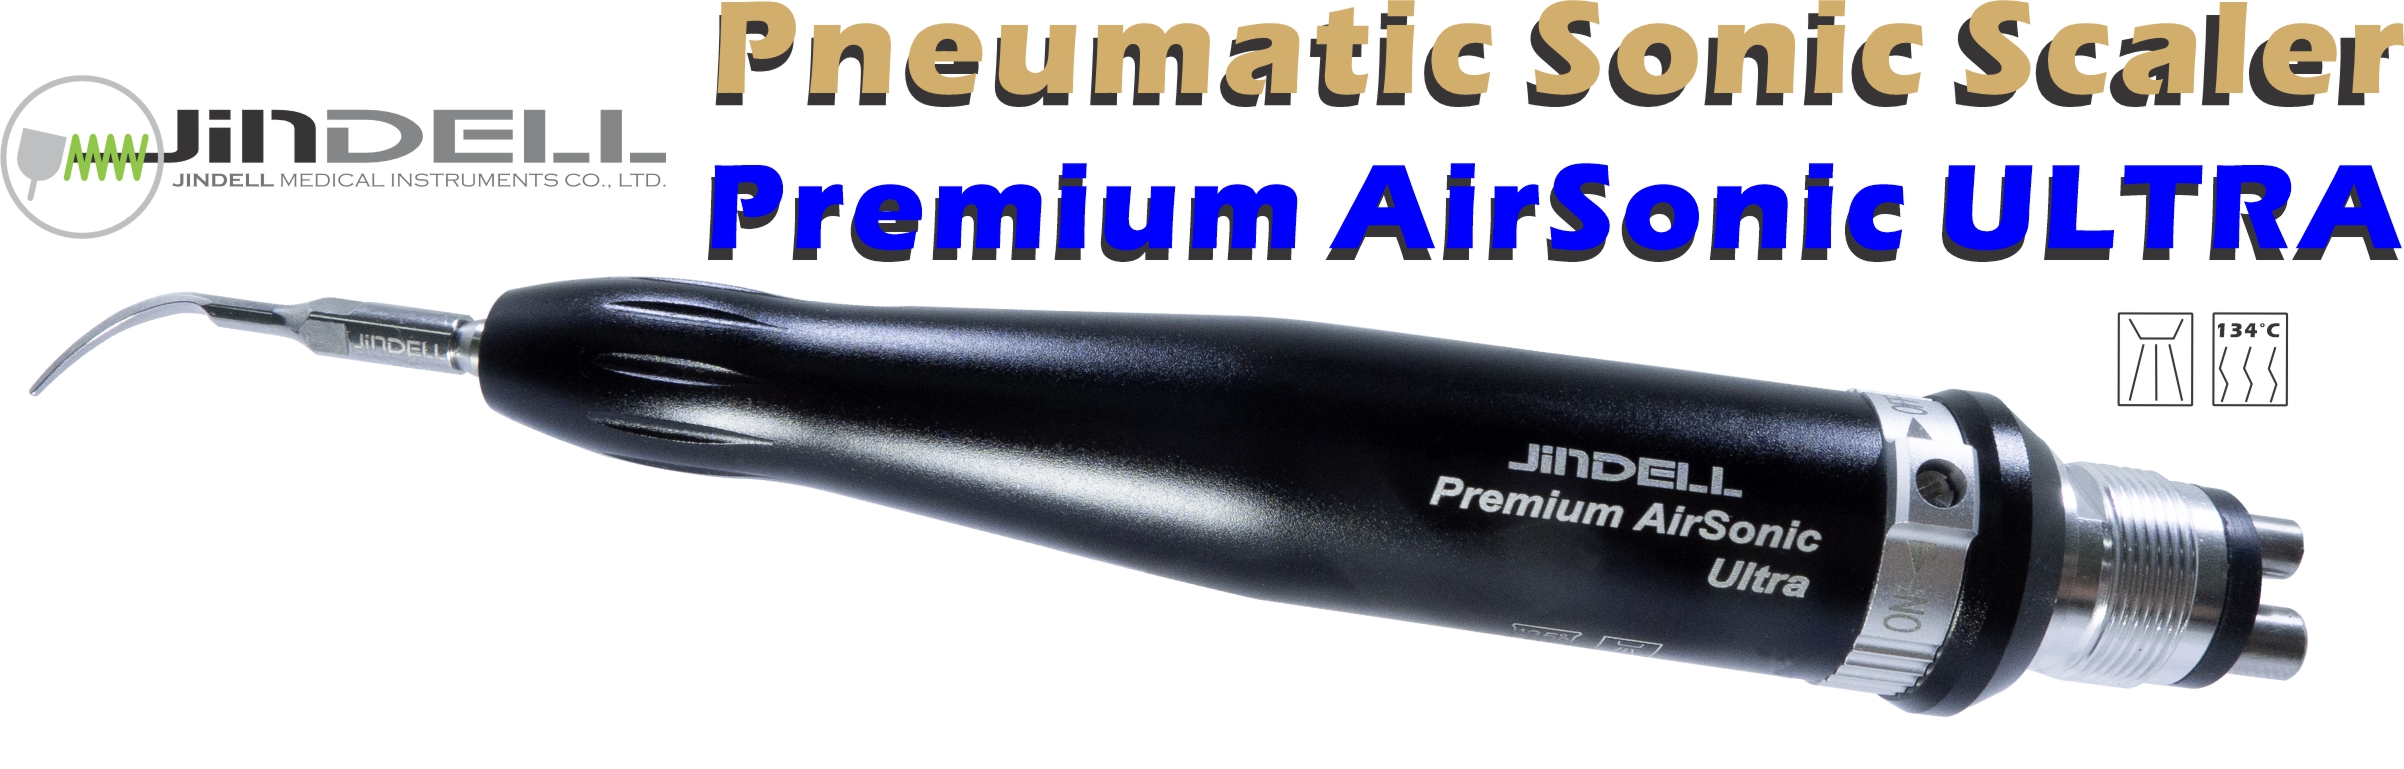 Premium AirSonic Ultra